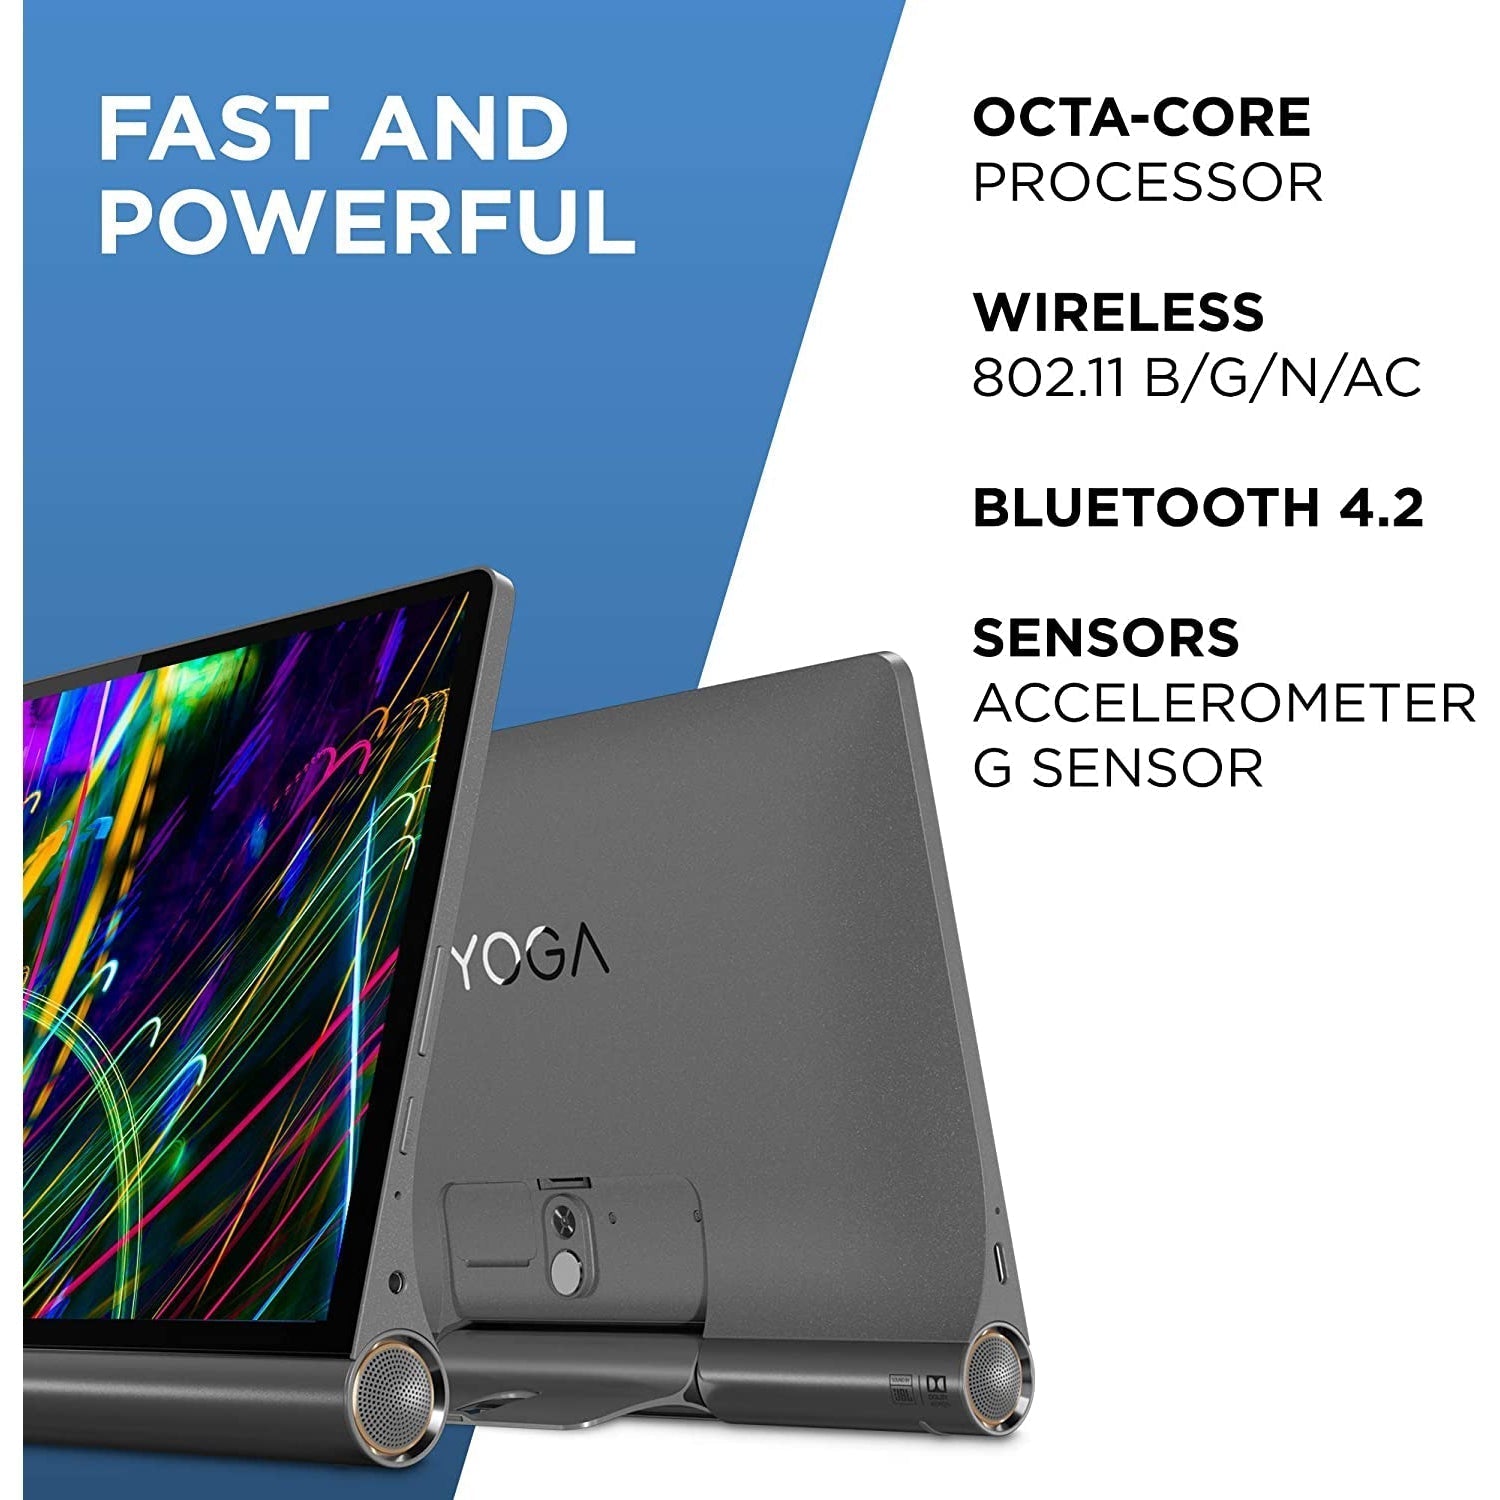 Lenovo Yoga Smart Tab Wi-Fi 10.1" Tablet, 3GB RAM, 32GB (YT-X705F) - Iron Grey - Refurbished Good